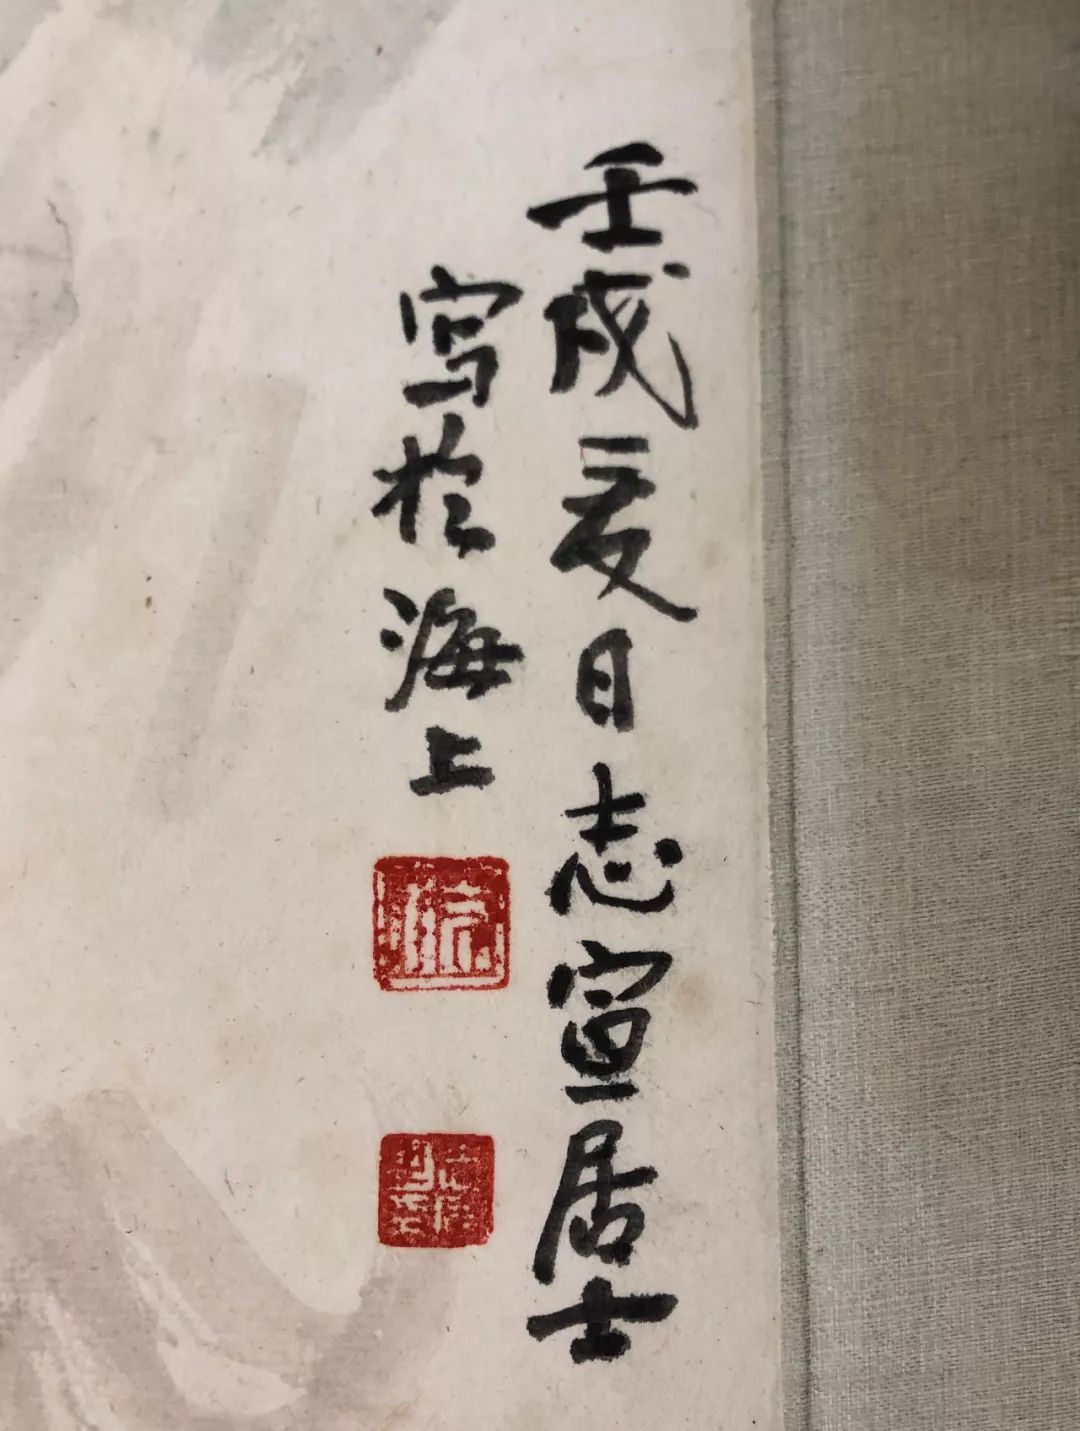 1984),字志宣,号逸庵,吴县人,父名承勲,字仲陶,母觝沈宝妹,生子女四人